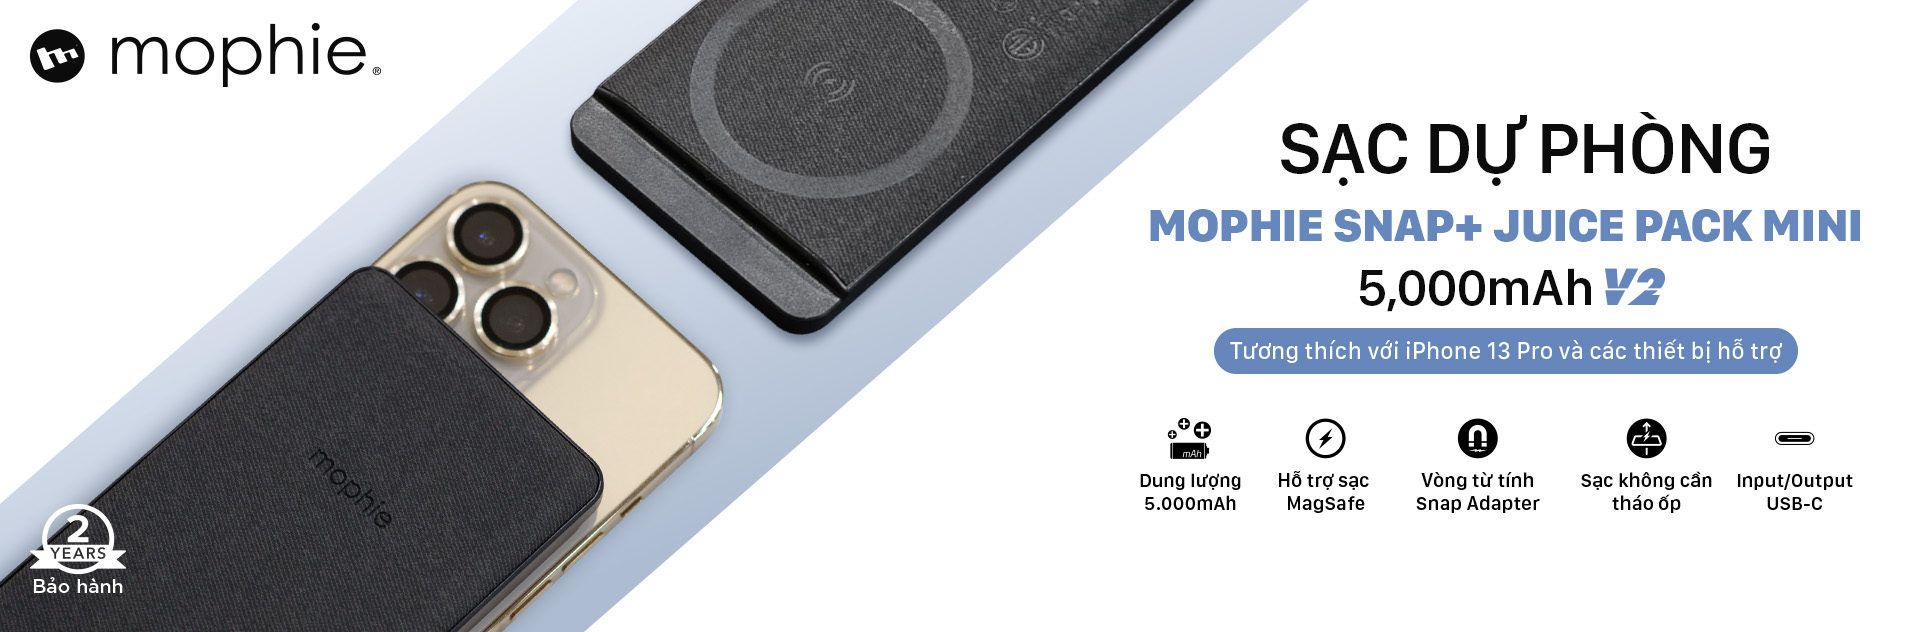 Sạc dự phòng Mophie Snap Plus+ 5,000mAh - Hàng chính hãng - Hỗ trợ Magsafe cho Iphone